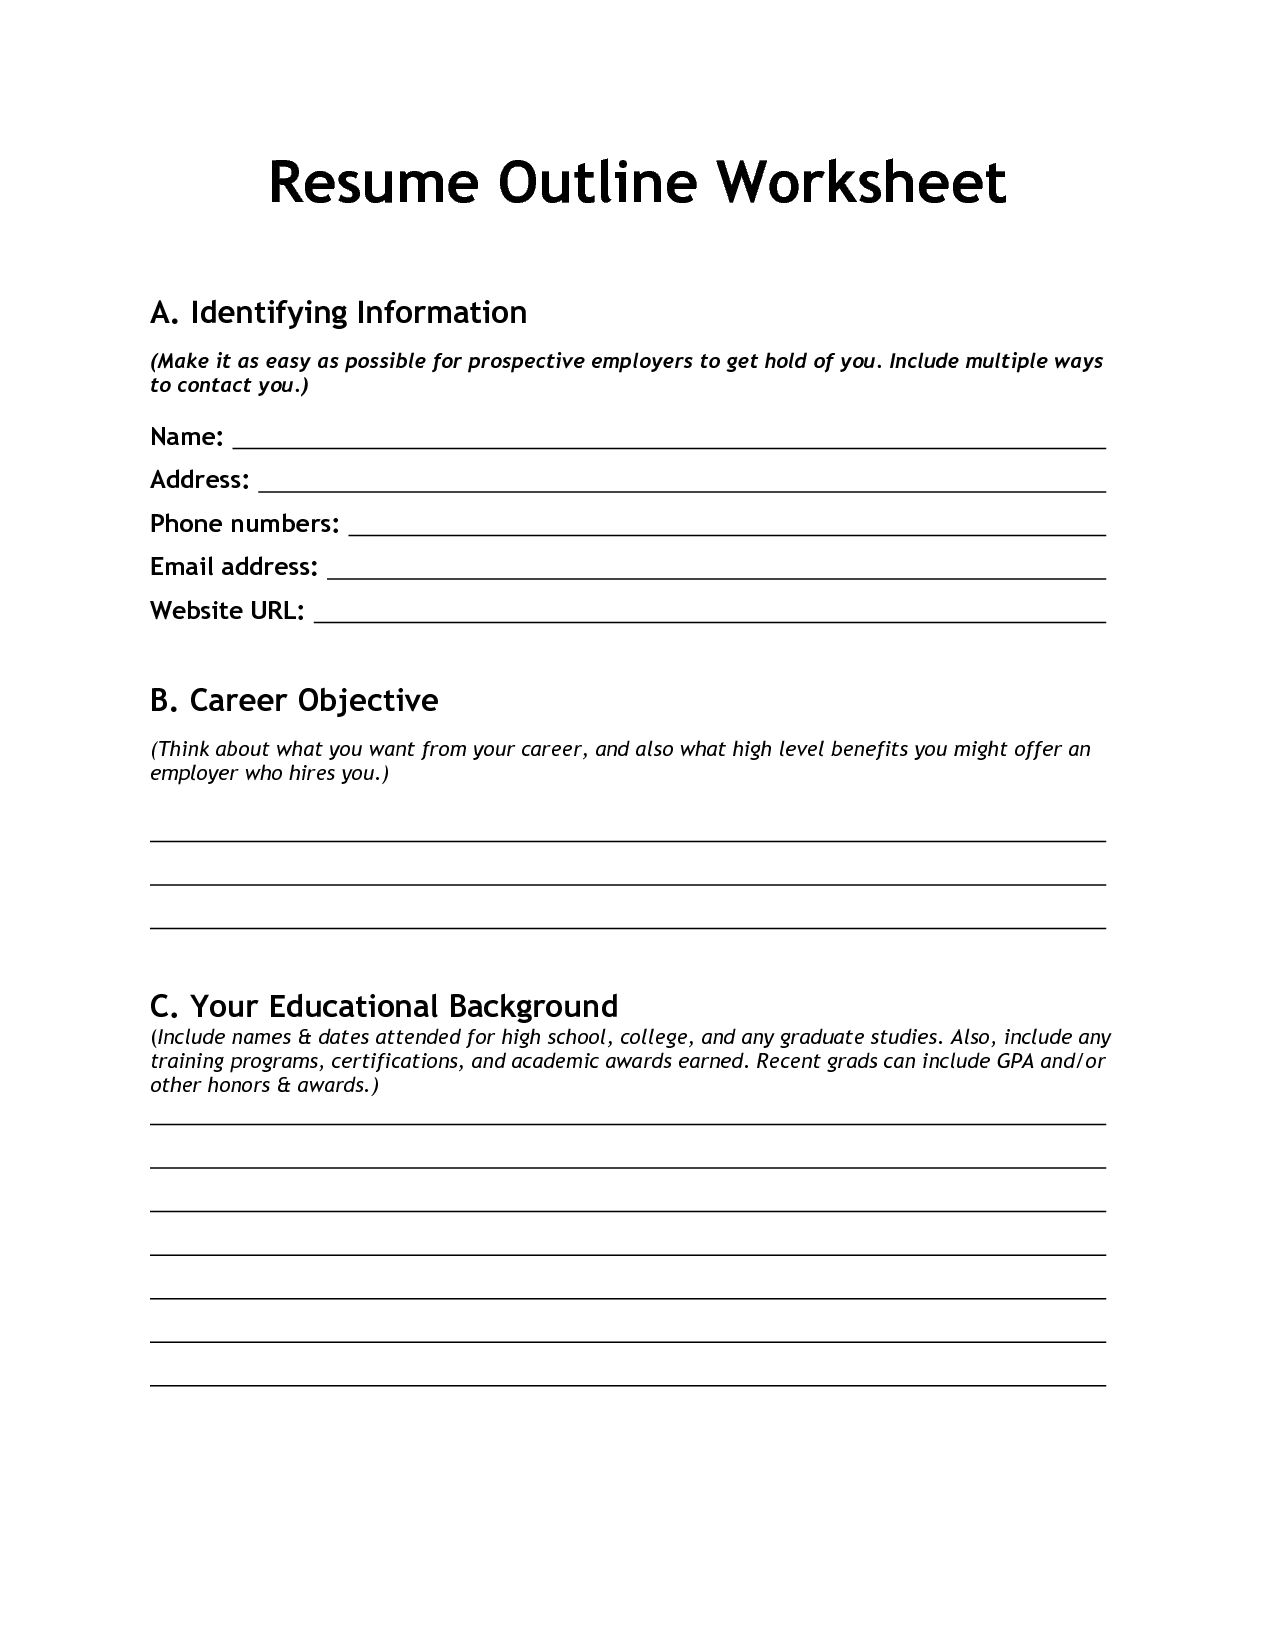 Resume Outline Worksheet Image